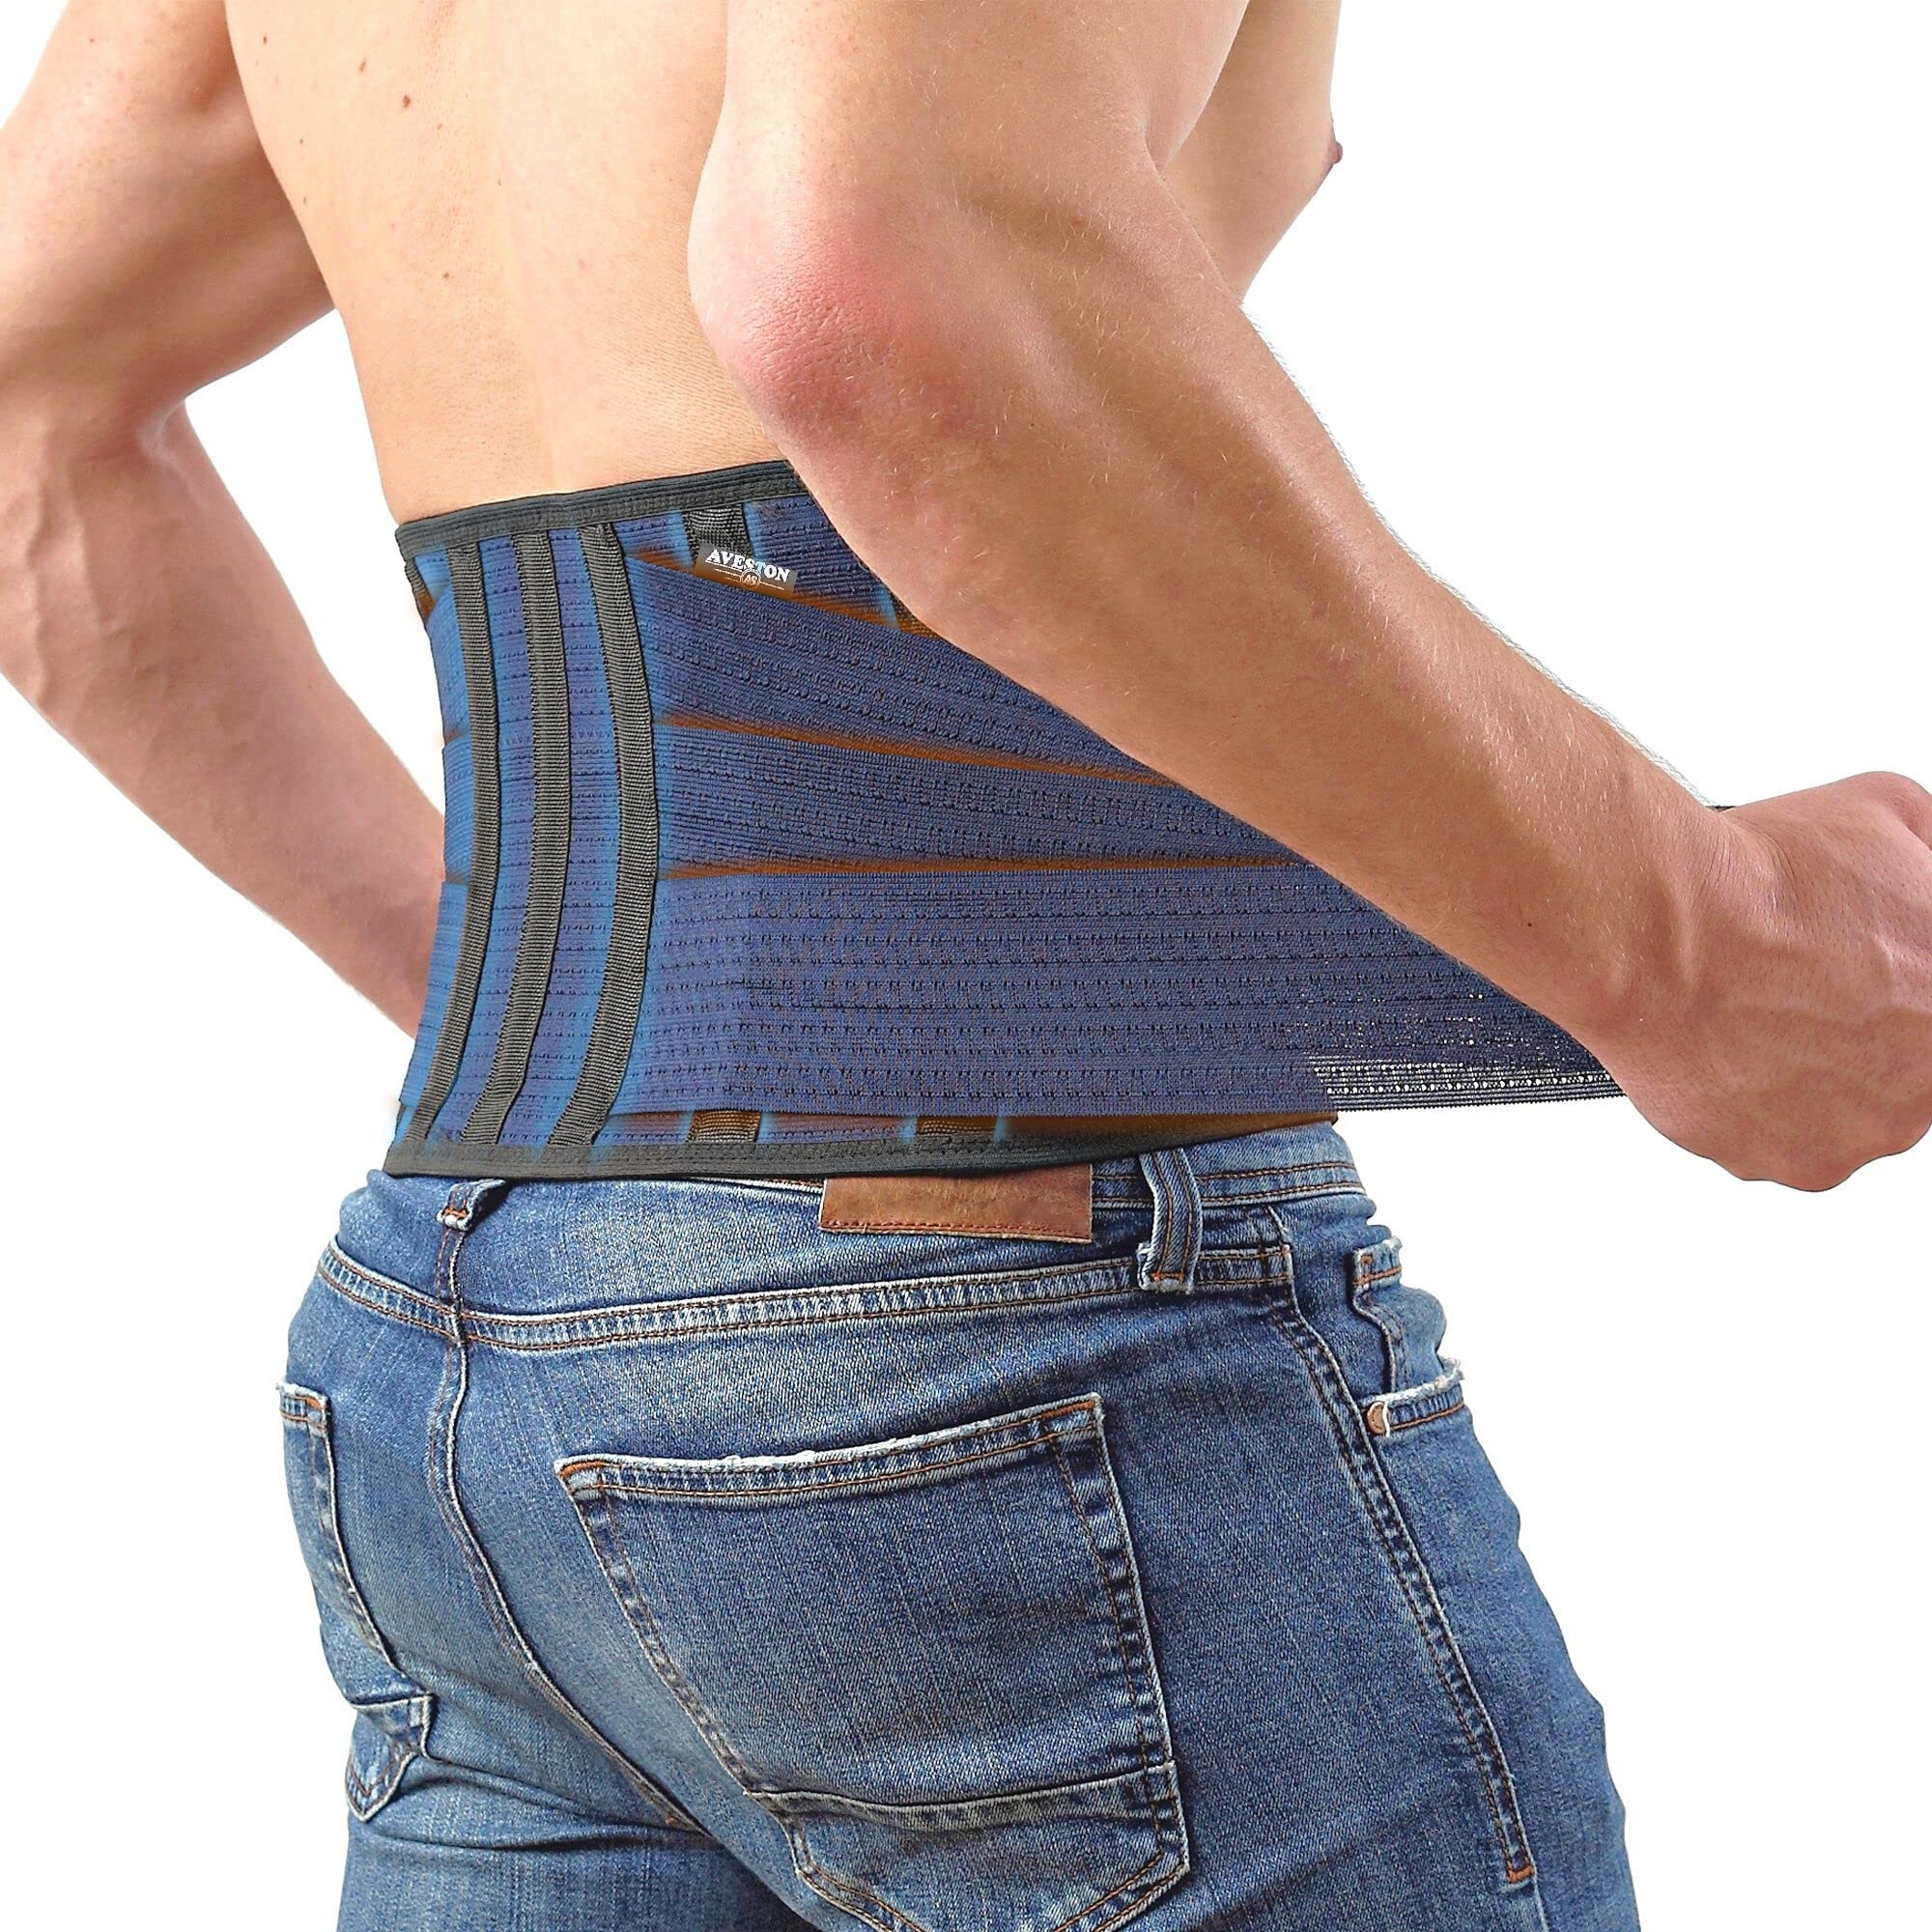 Back Brace for Lower Back Pain - Lumbar Support Belt for Women & Men